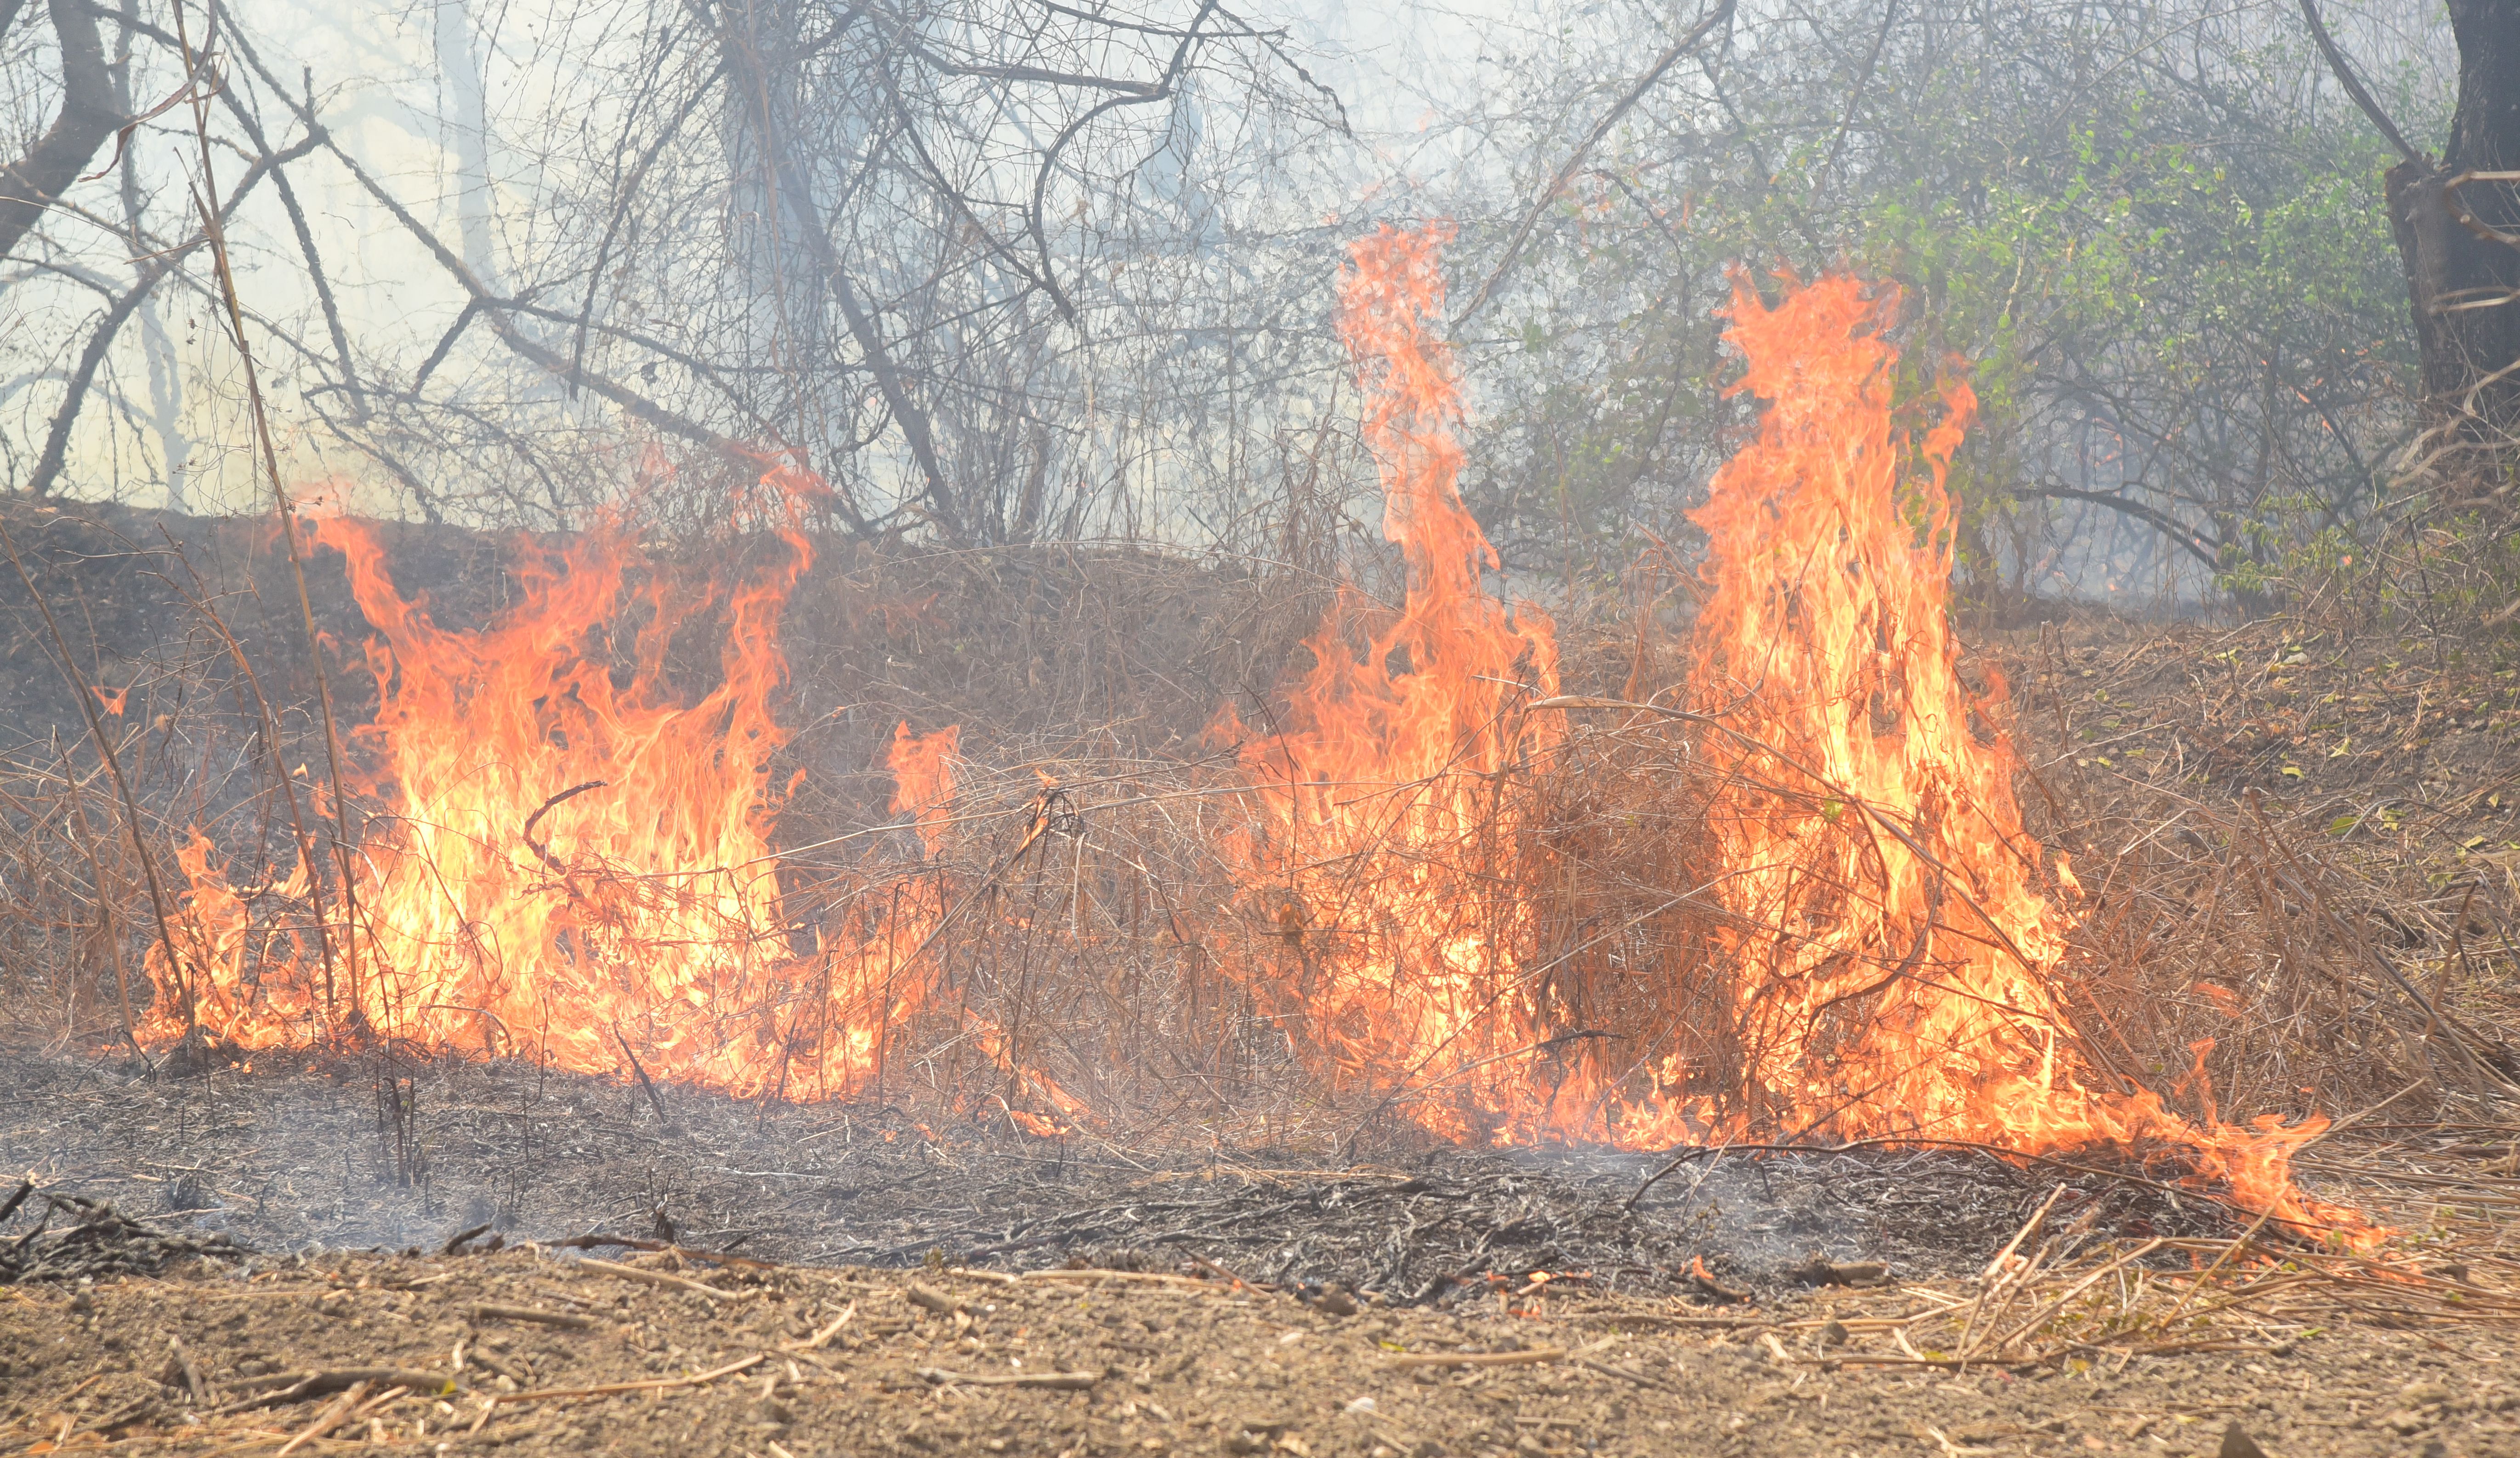 सीसारमा स्थित सीतामाता नर्सरी में लगी आग देखें photo